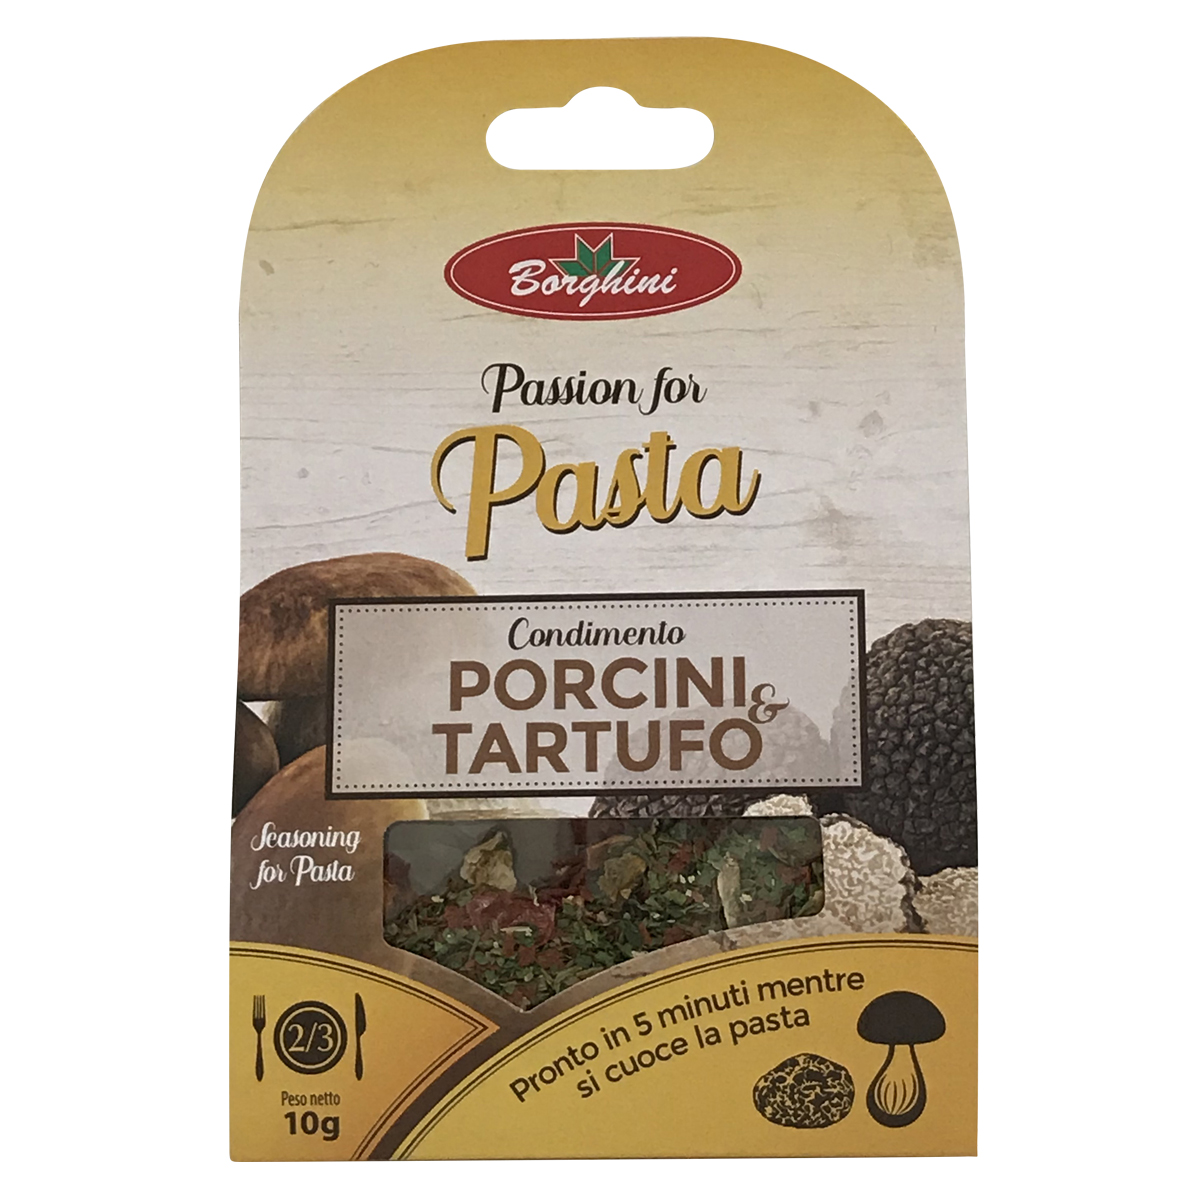 Passion for pasta Porcini e Tartufo herb mix